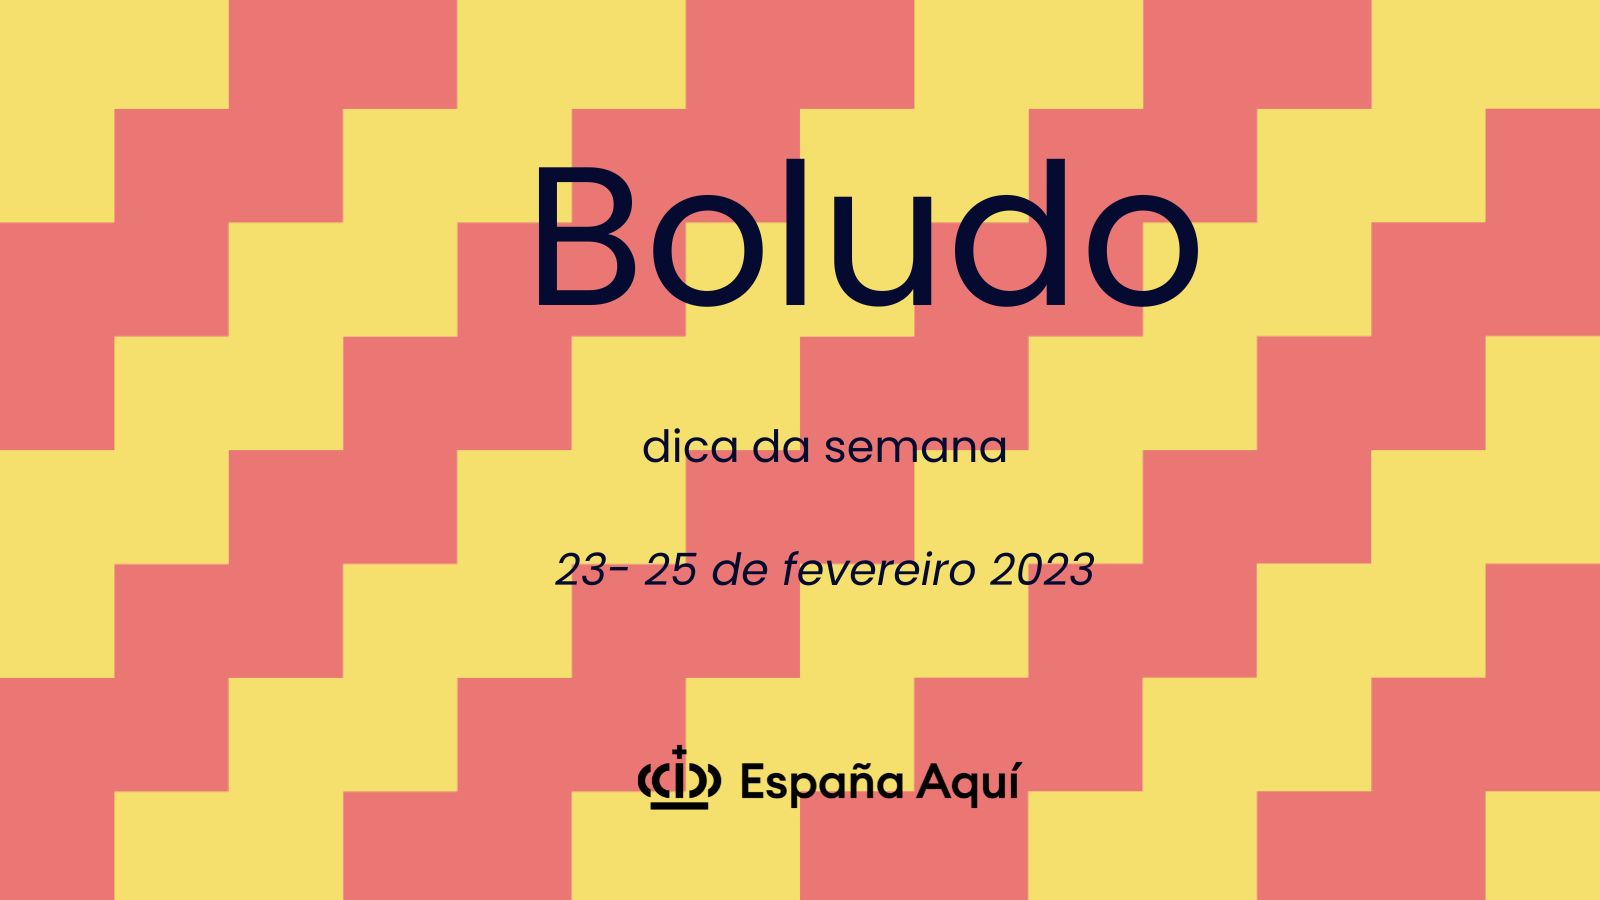 https://www.espanaaqui.com.br/pdf/2023/Dica%20da%20semana.%20Boludo.jpg